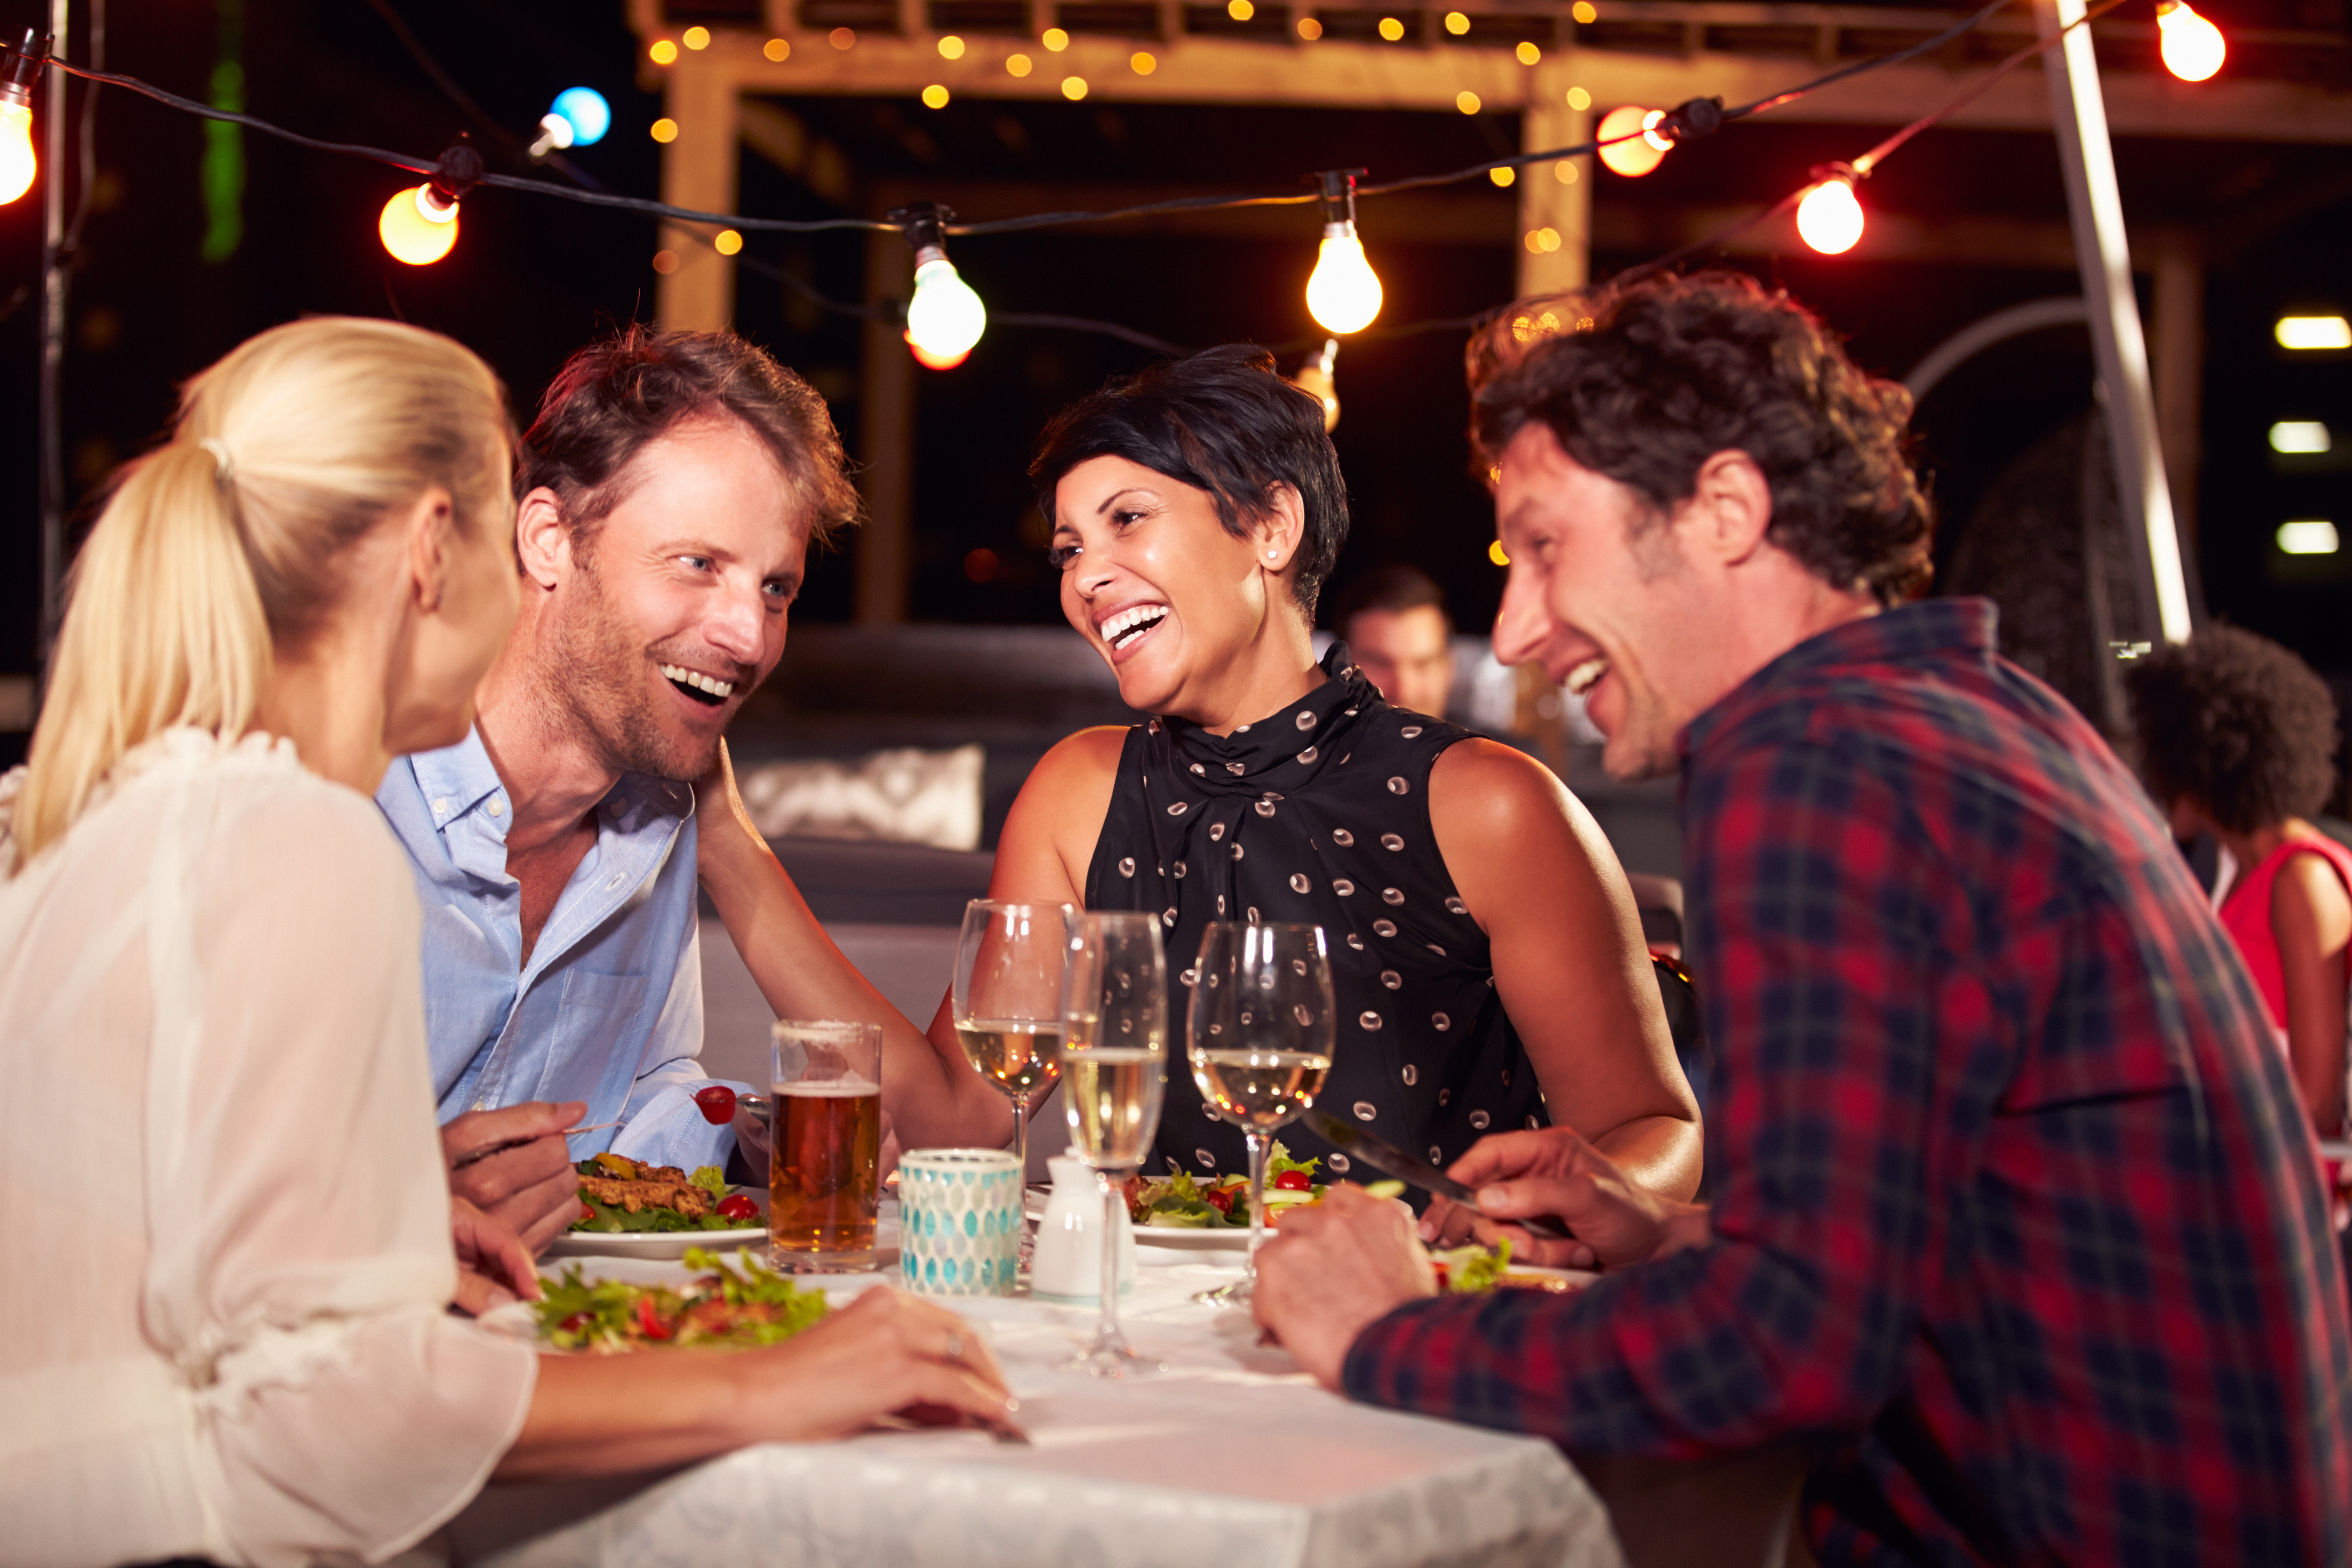 Friends enjoying a meal | Source: Shutterstock